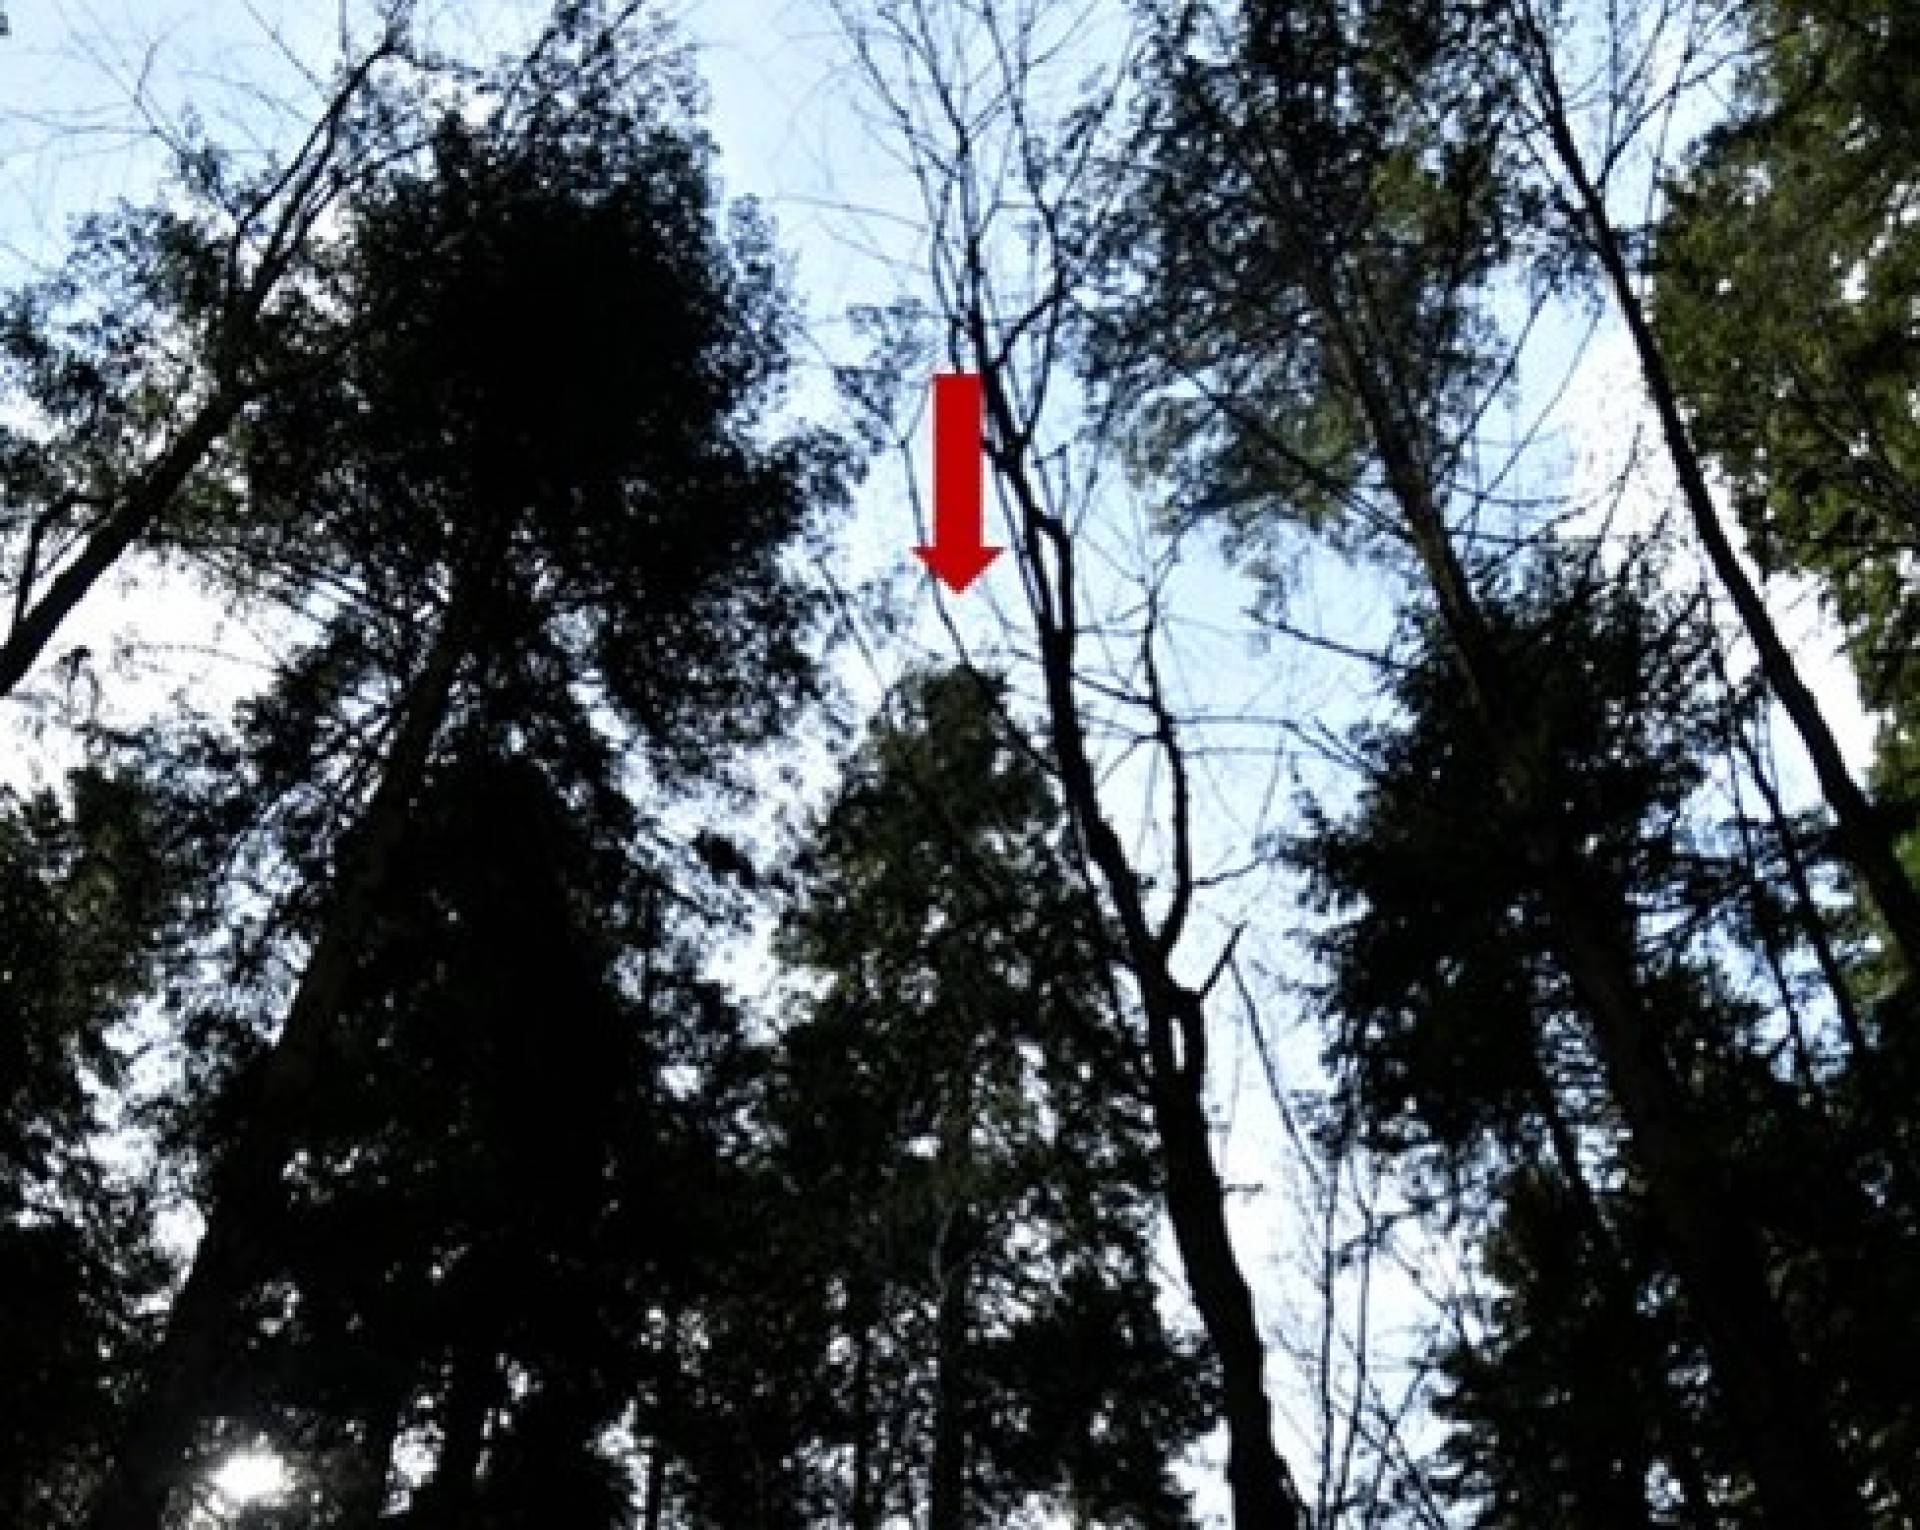 Krakowscy naukowcy namierzyli najwyższe drzewo rodzime w Polsce